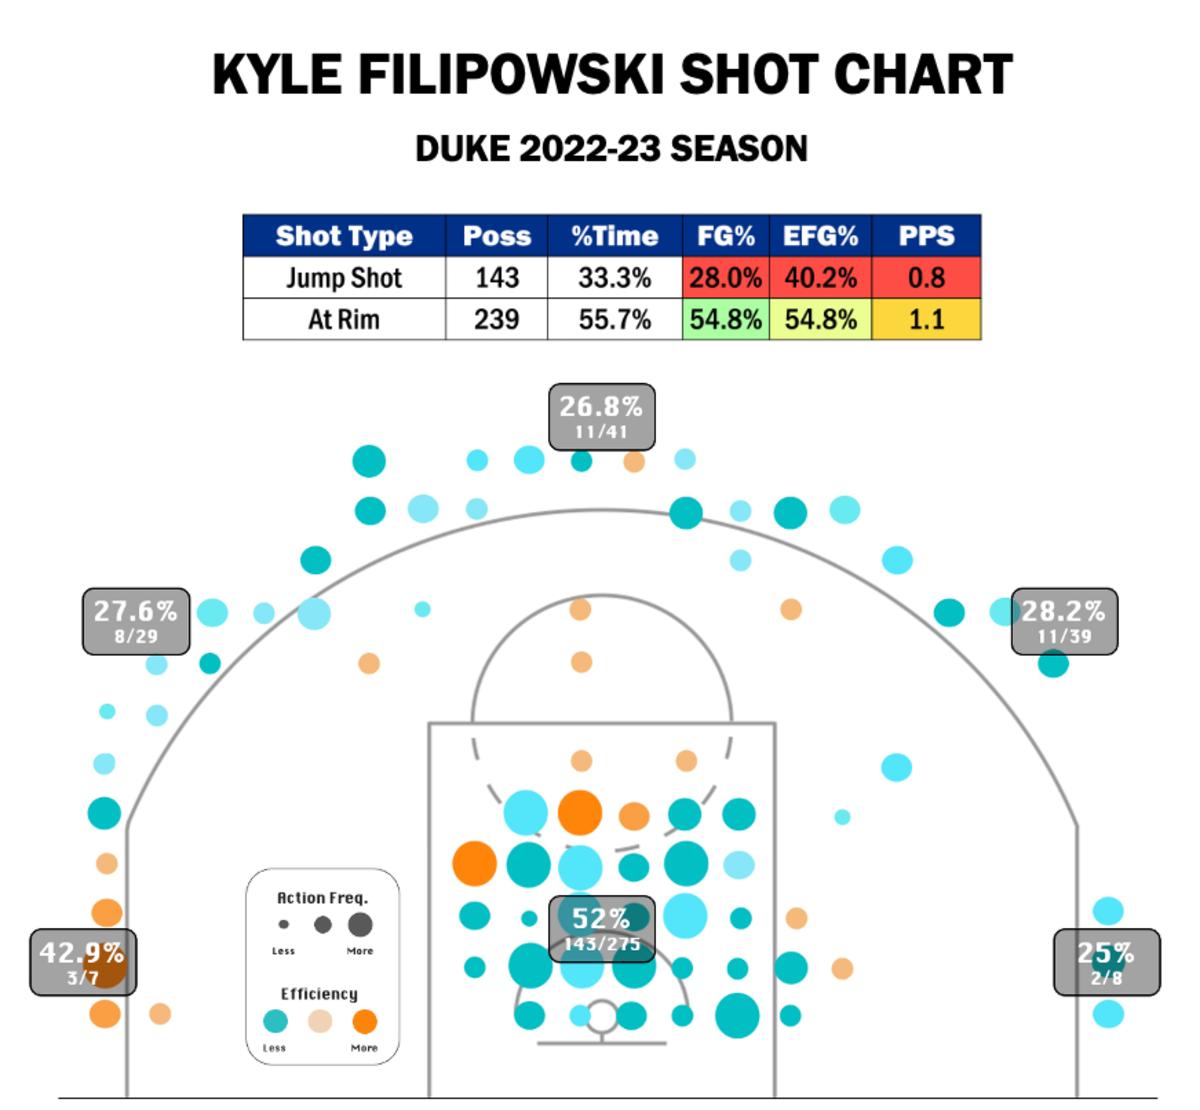 Filipowski's 22-23 Shot Chart